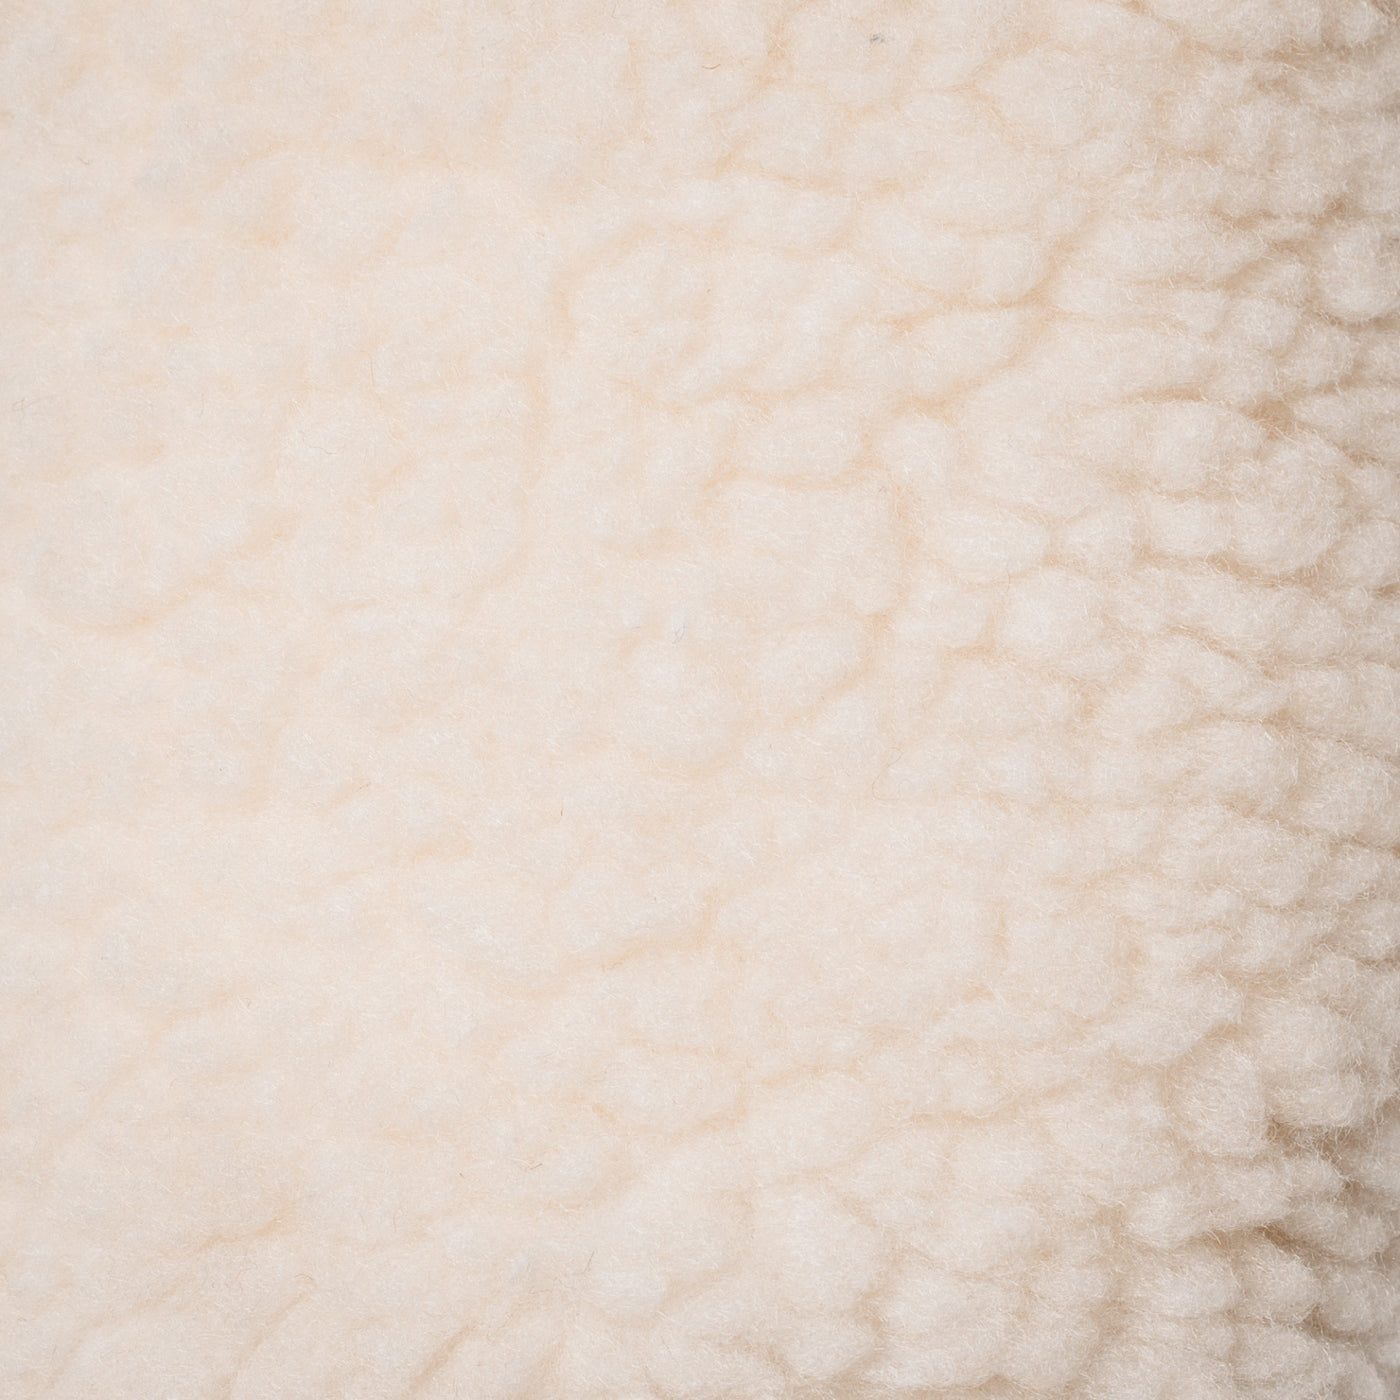 Circa '71 Headcover - White